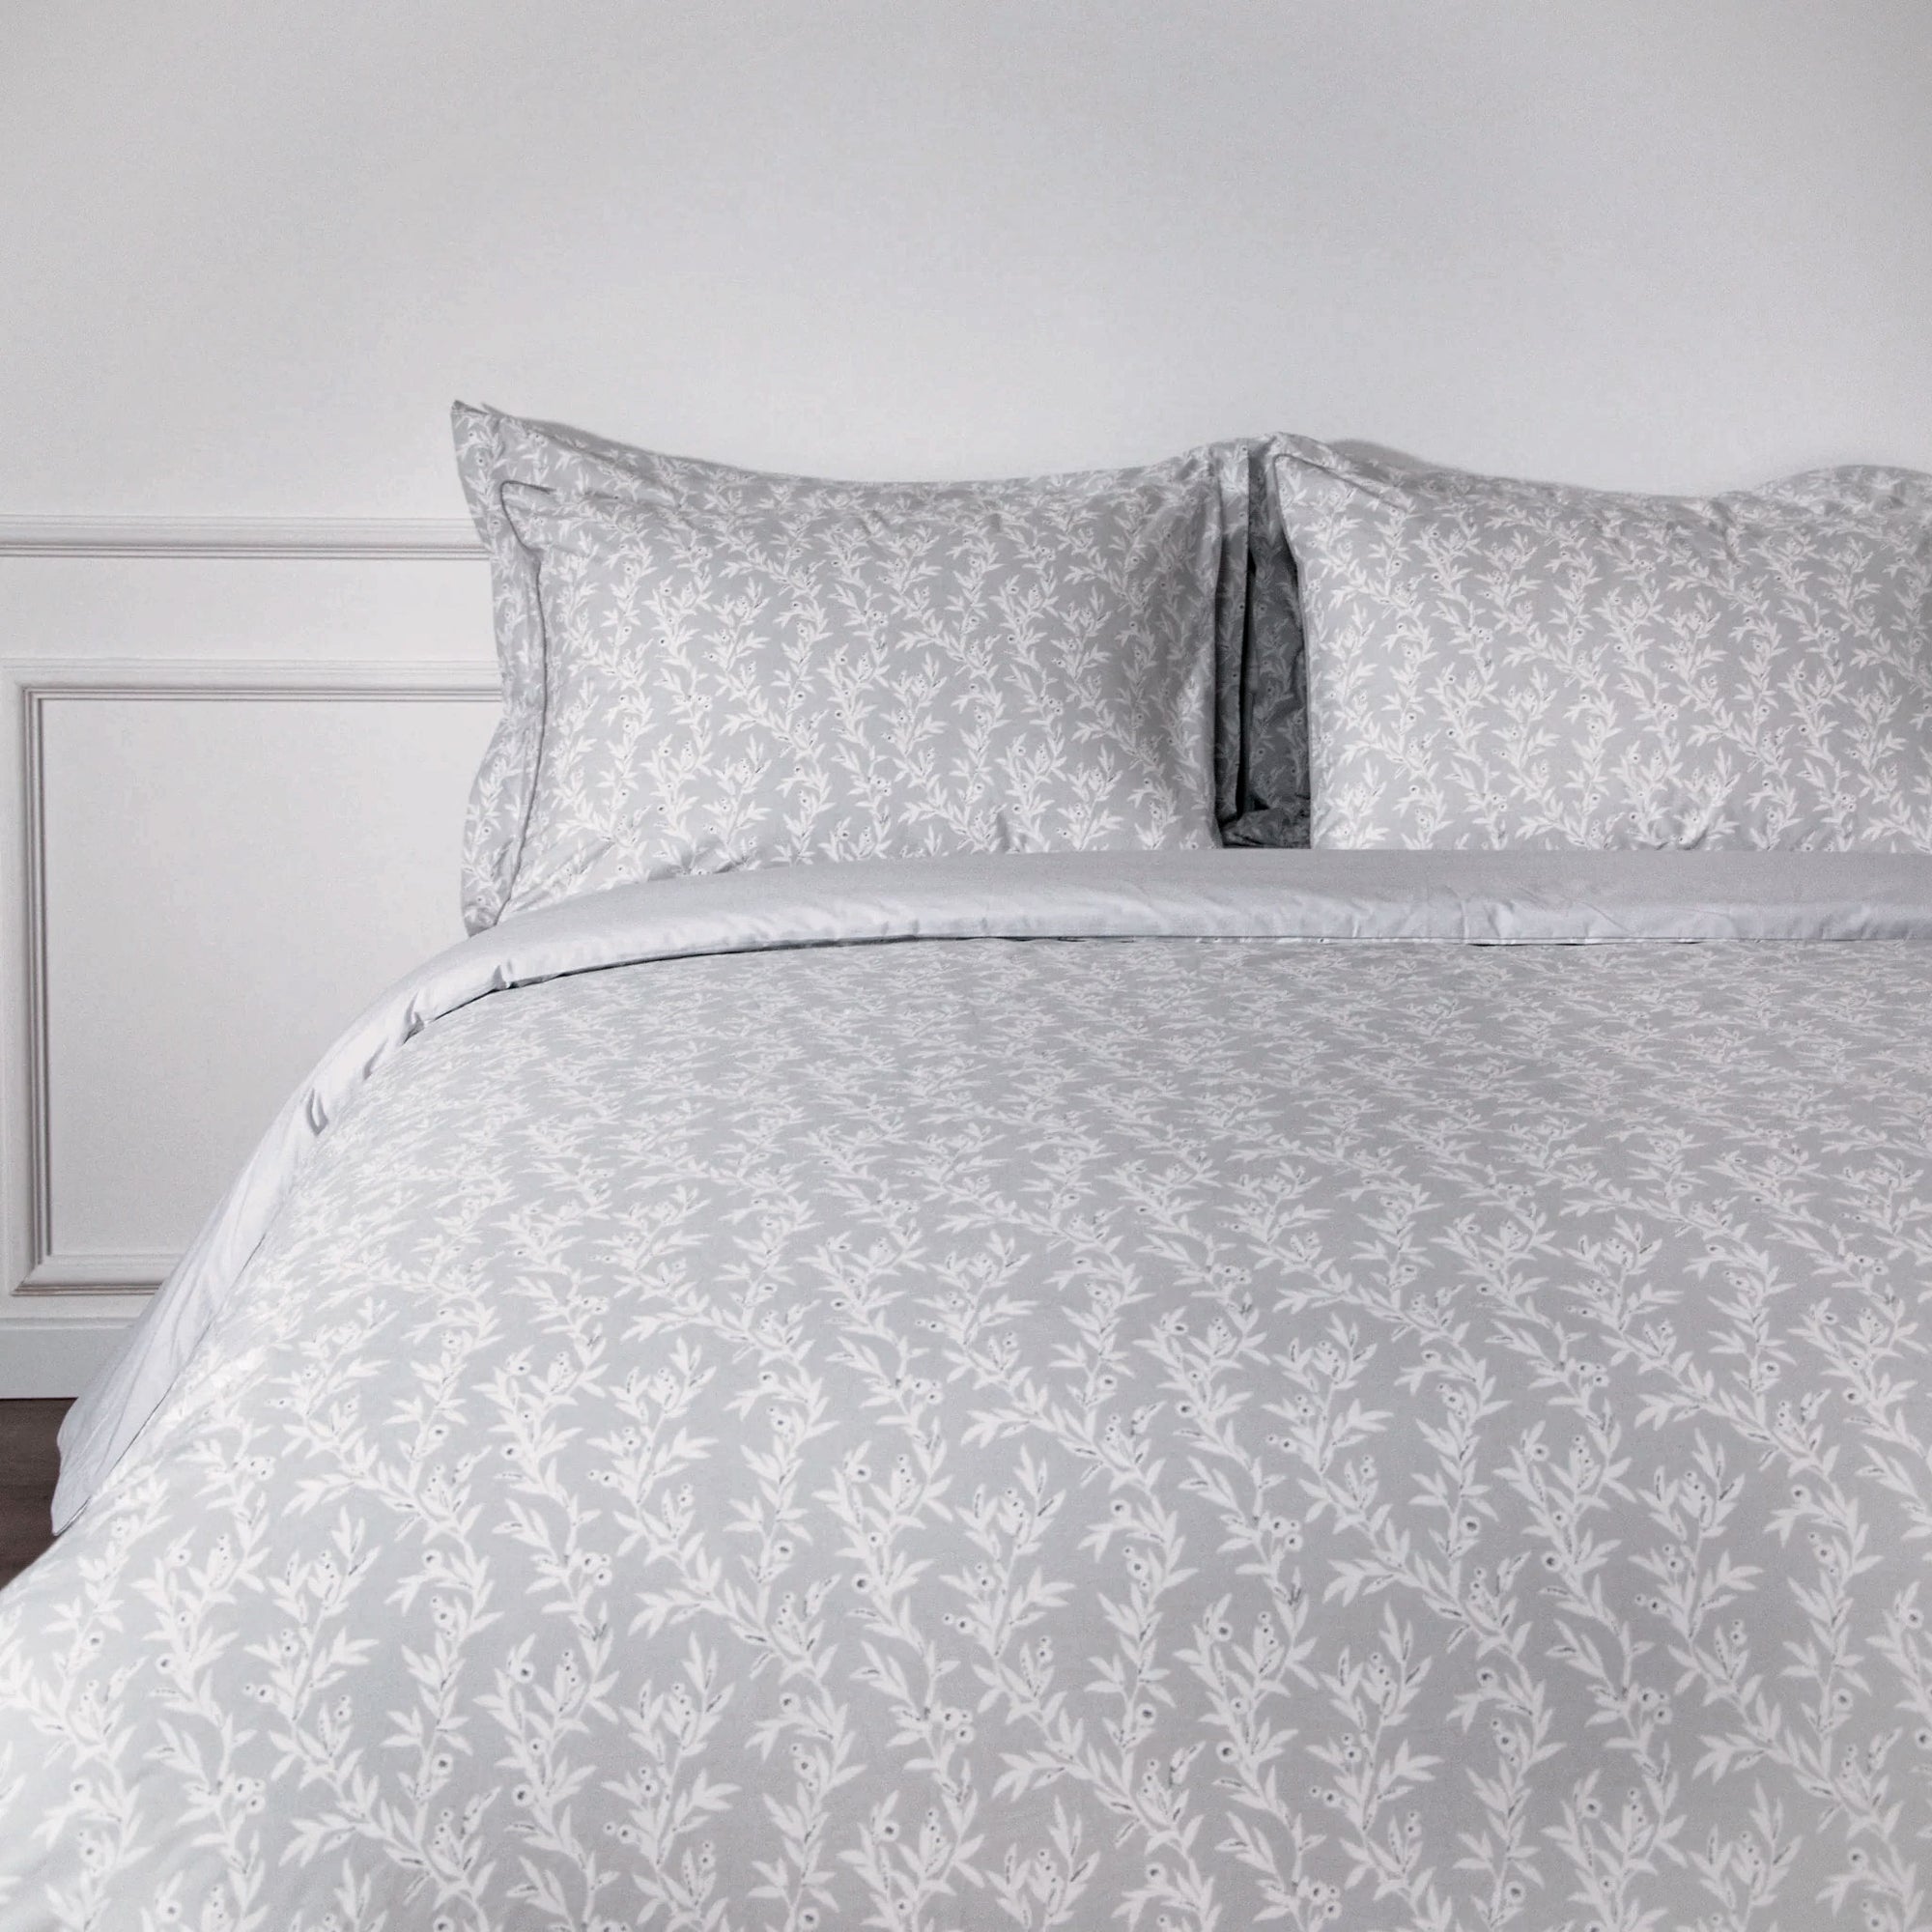 Bettwäsche-Set aus reinem Perkal mit Blümchenmuster in Grau und Weiß